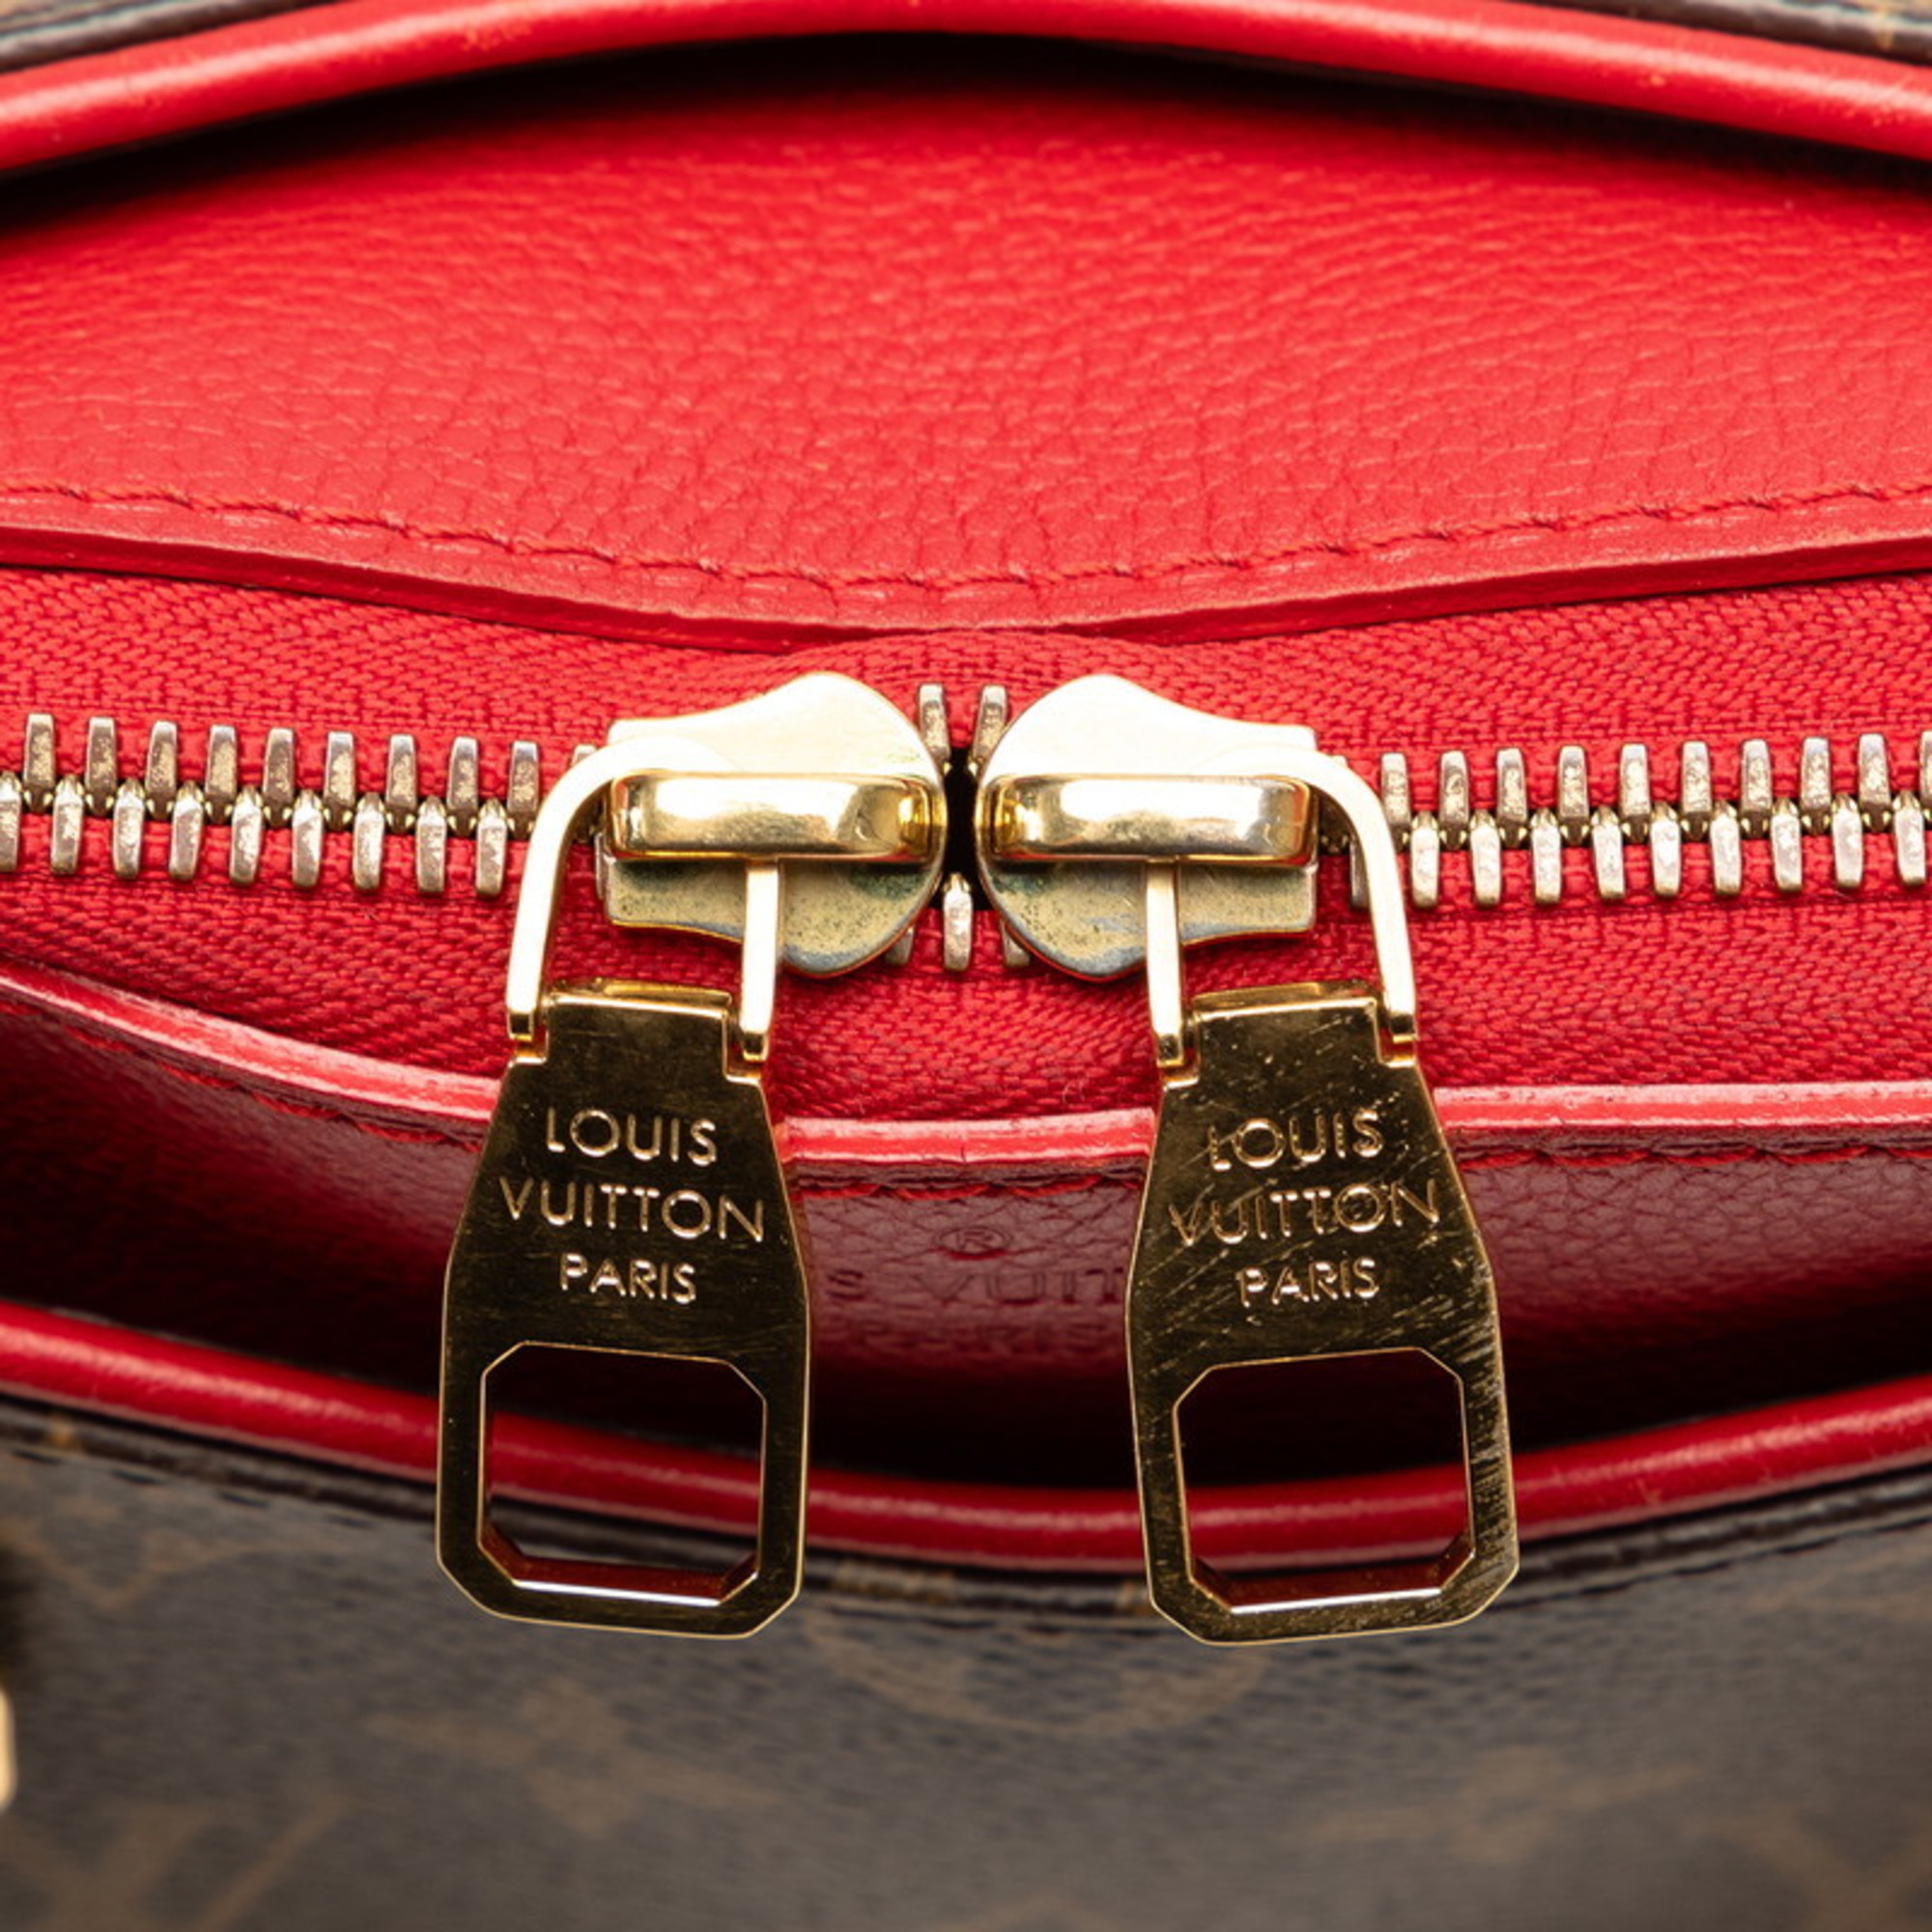 Louis Vuitton Monogram Pallas BB Handbag M41241 Cerise Red PVC Leather Women's LOUIS VUITTON